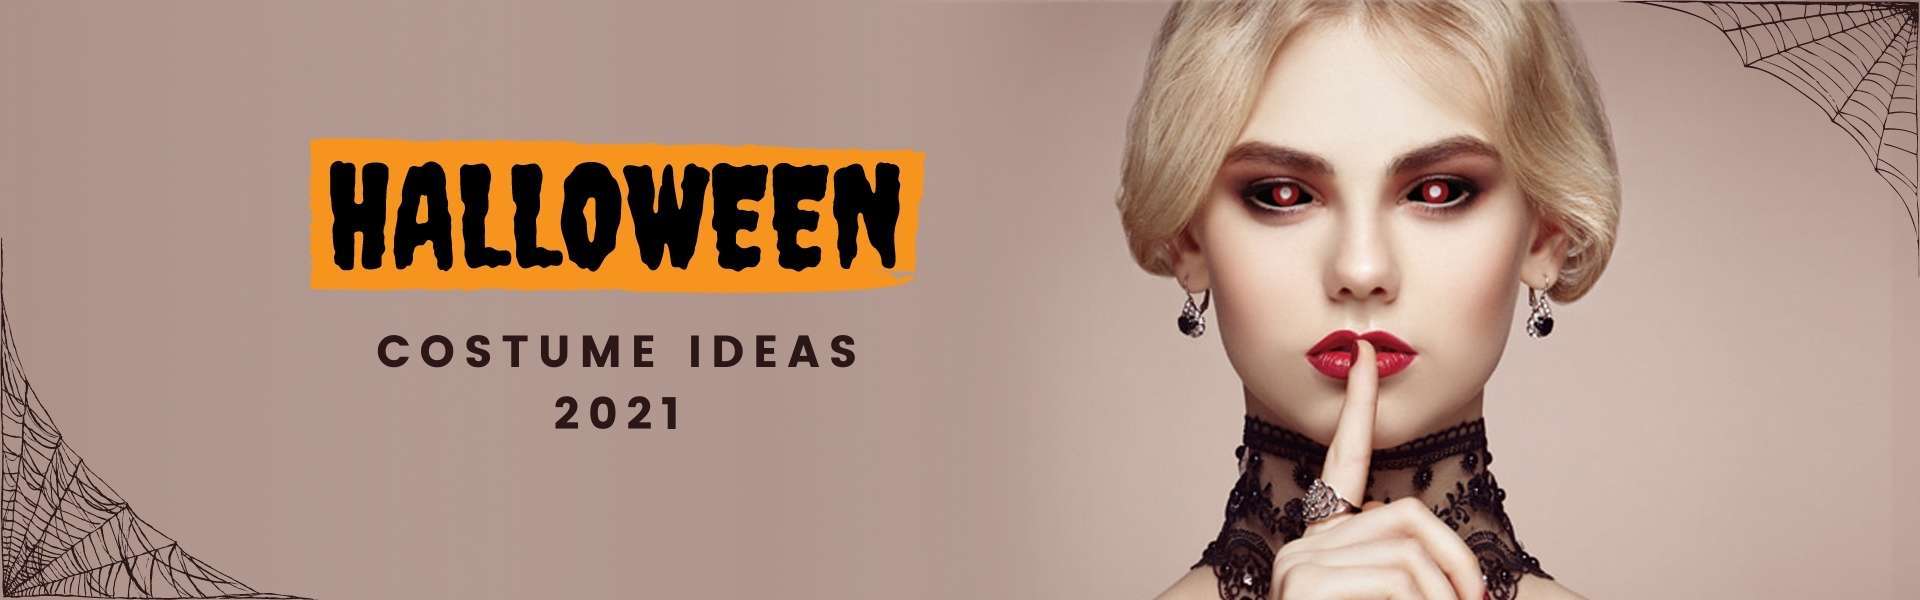 Halloween Costume Ideas 2021